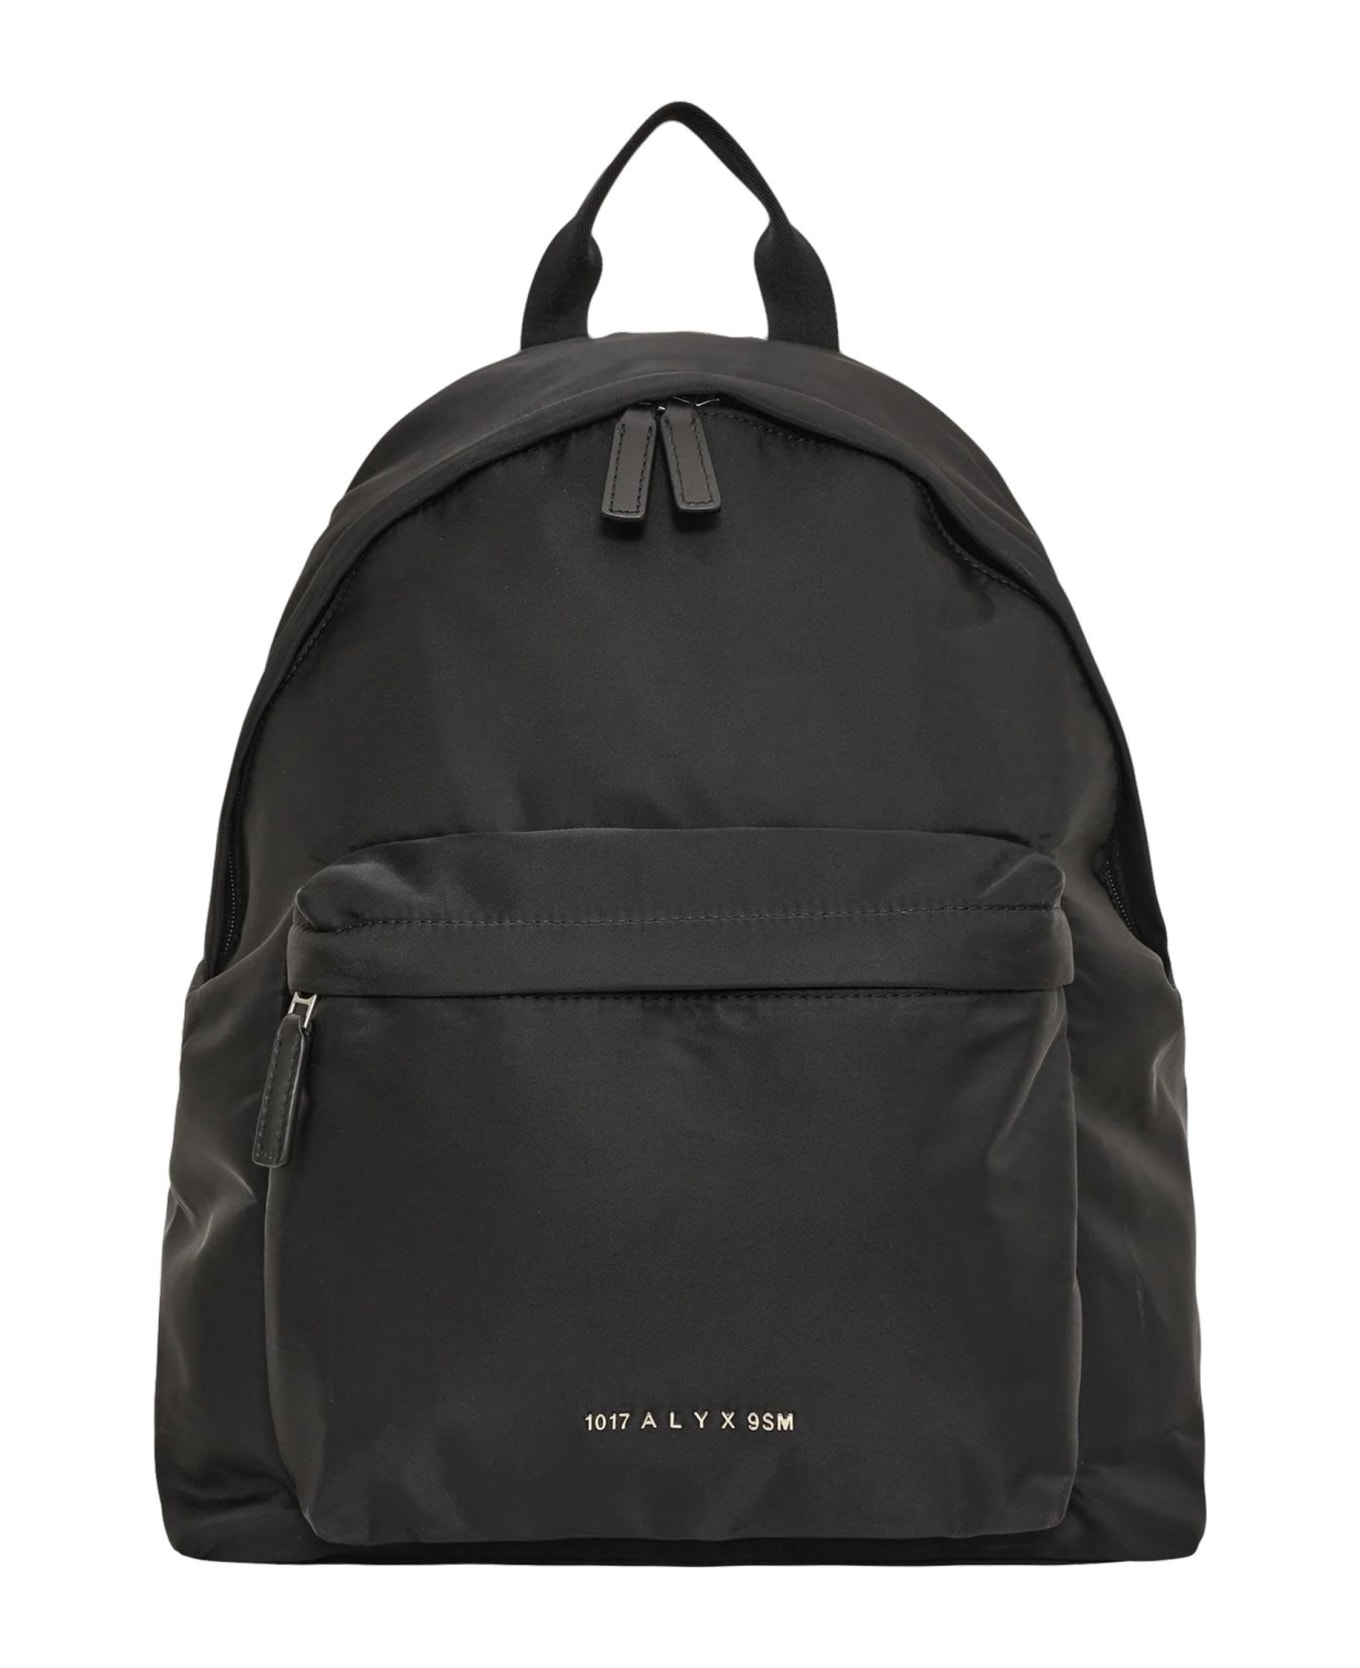 1017 ALYX 9SM Black Nylon Backpack - Nero